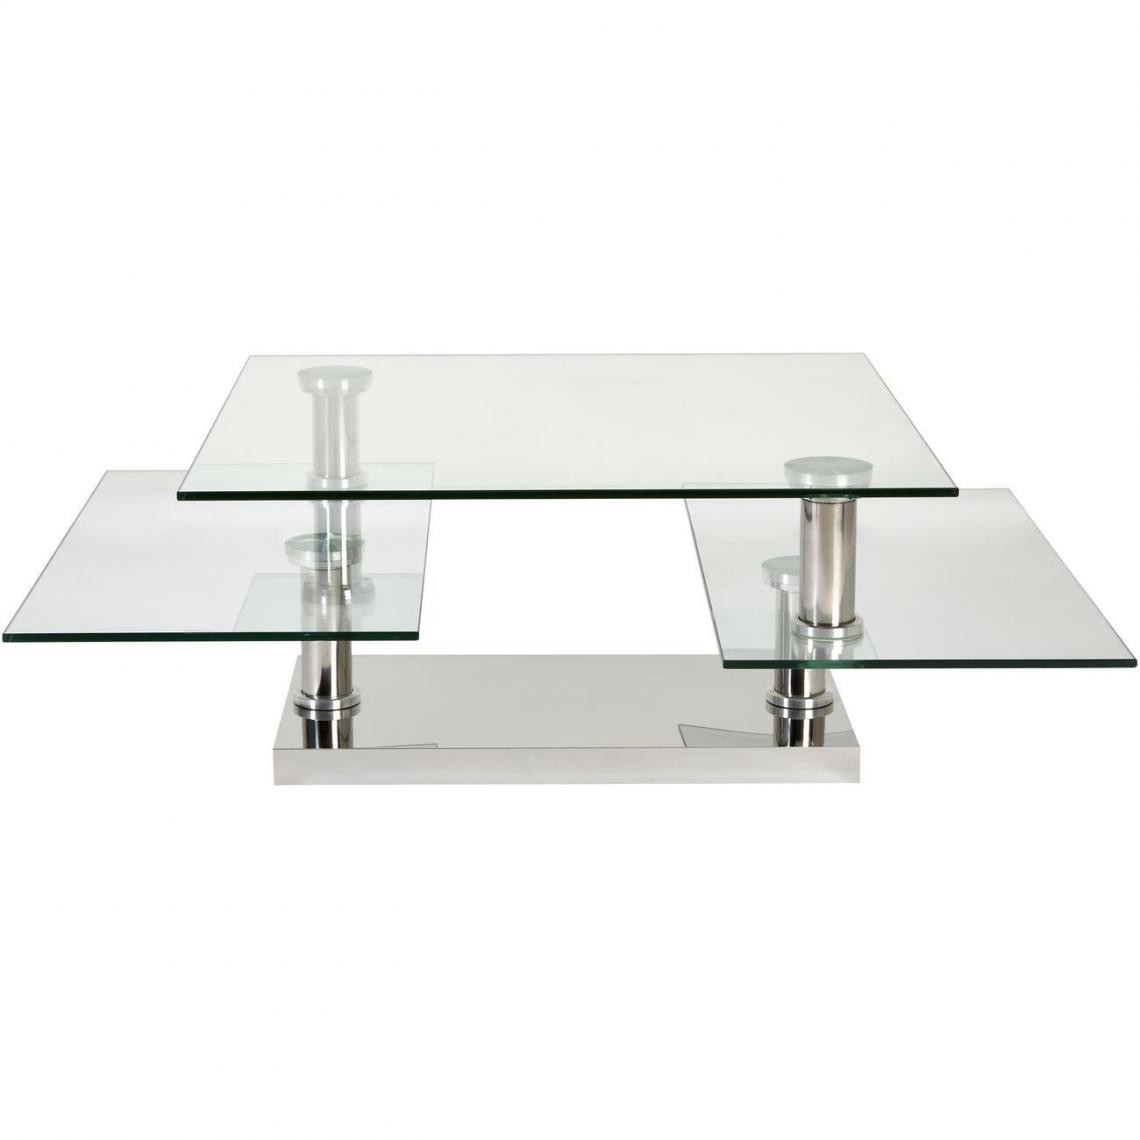 ATHM DESIGN - Table basse BURBANE Gris - plateau Verre pieds Metal 80 x 80 - Tables basses